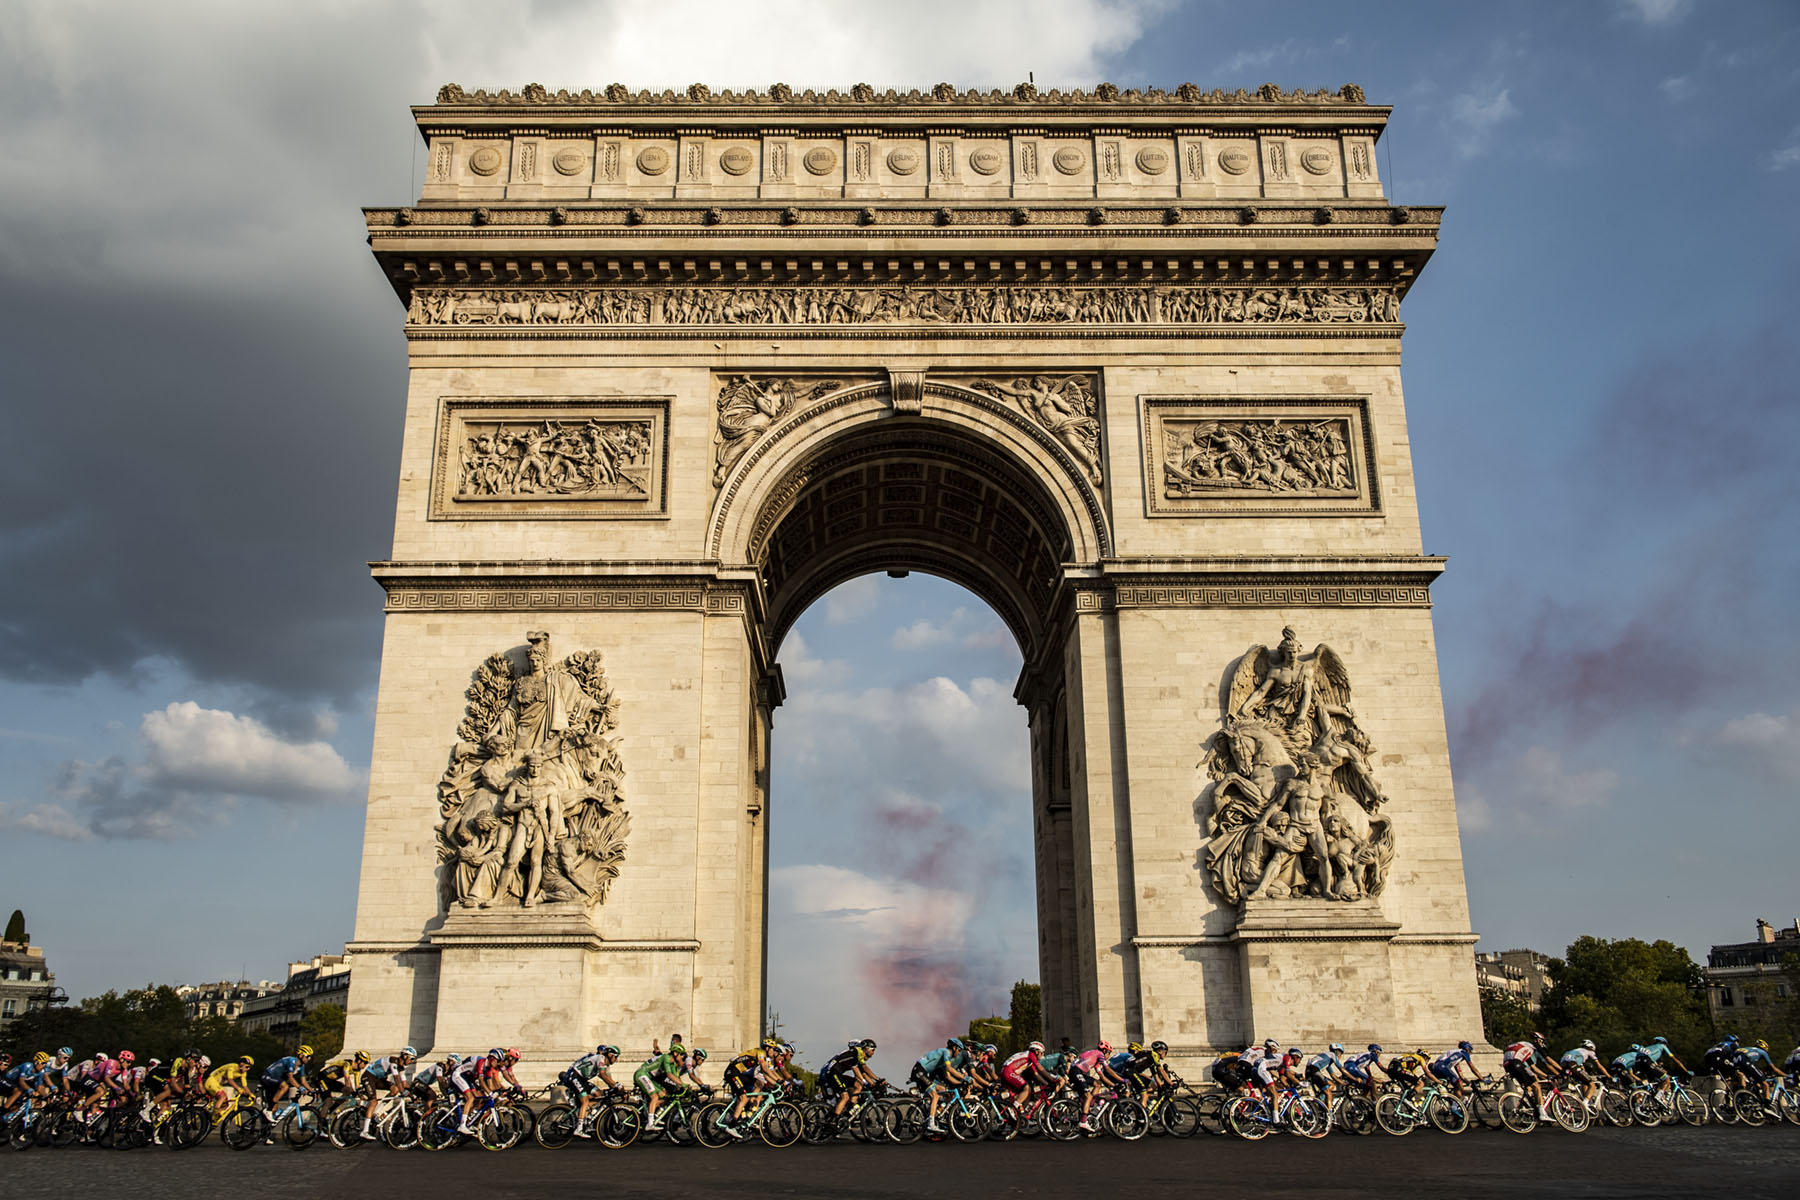 Tour de France 2020 - Stage Twenty One - The peloton rides past the Arc de Triomphe